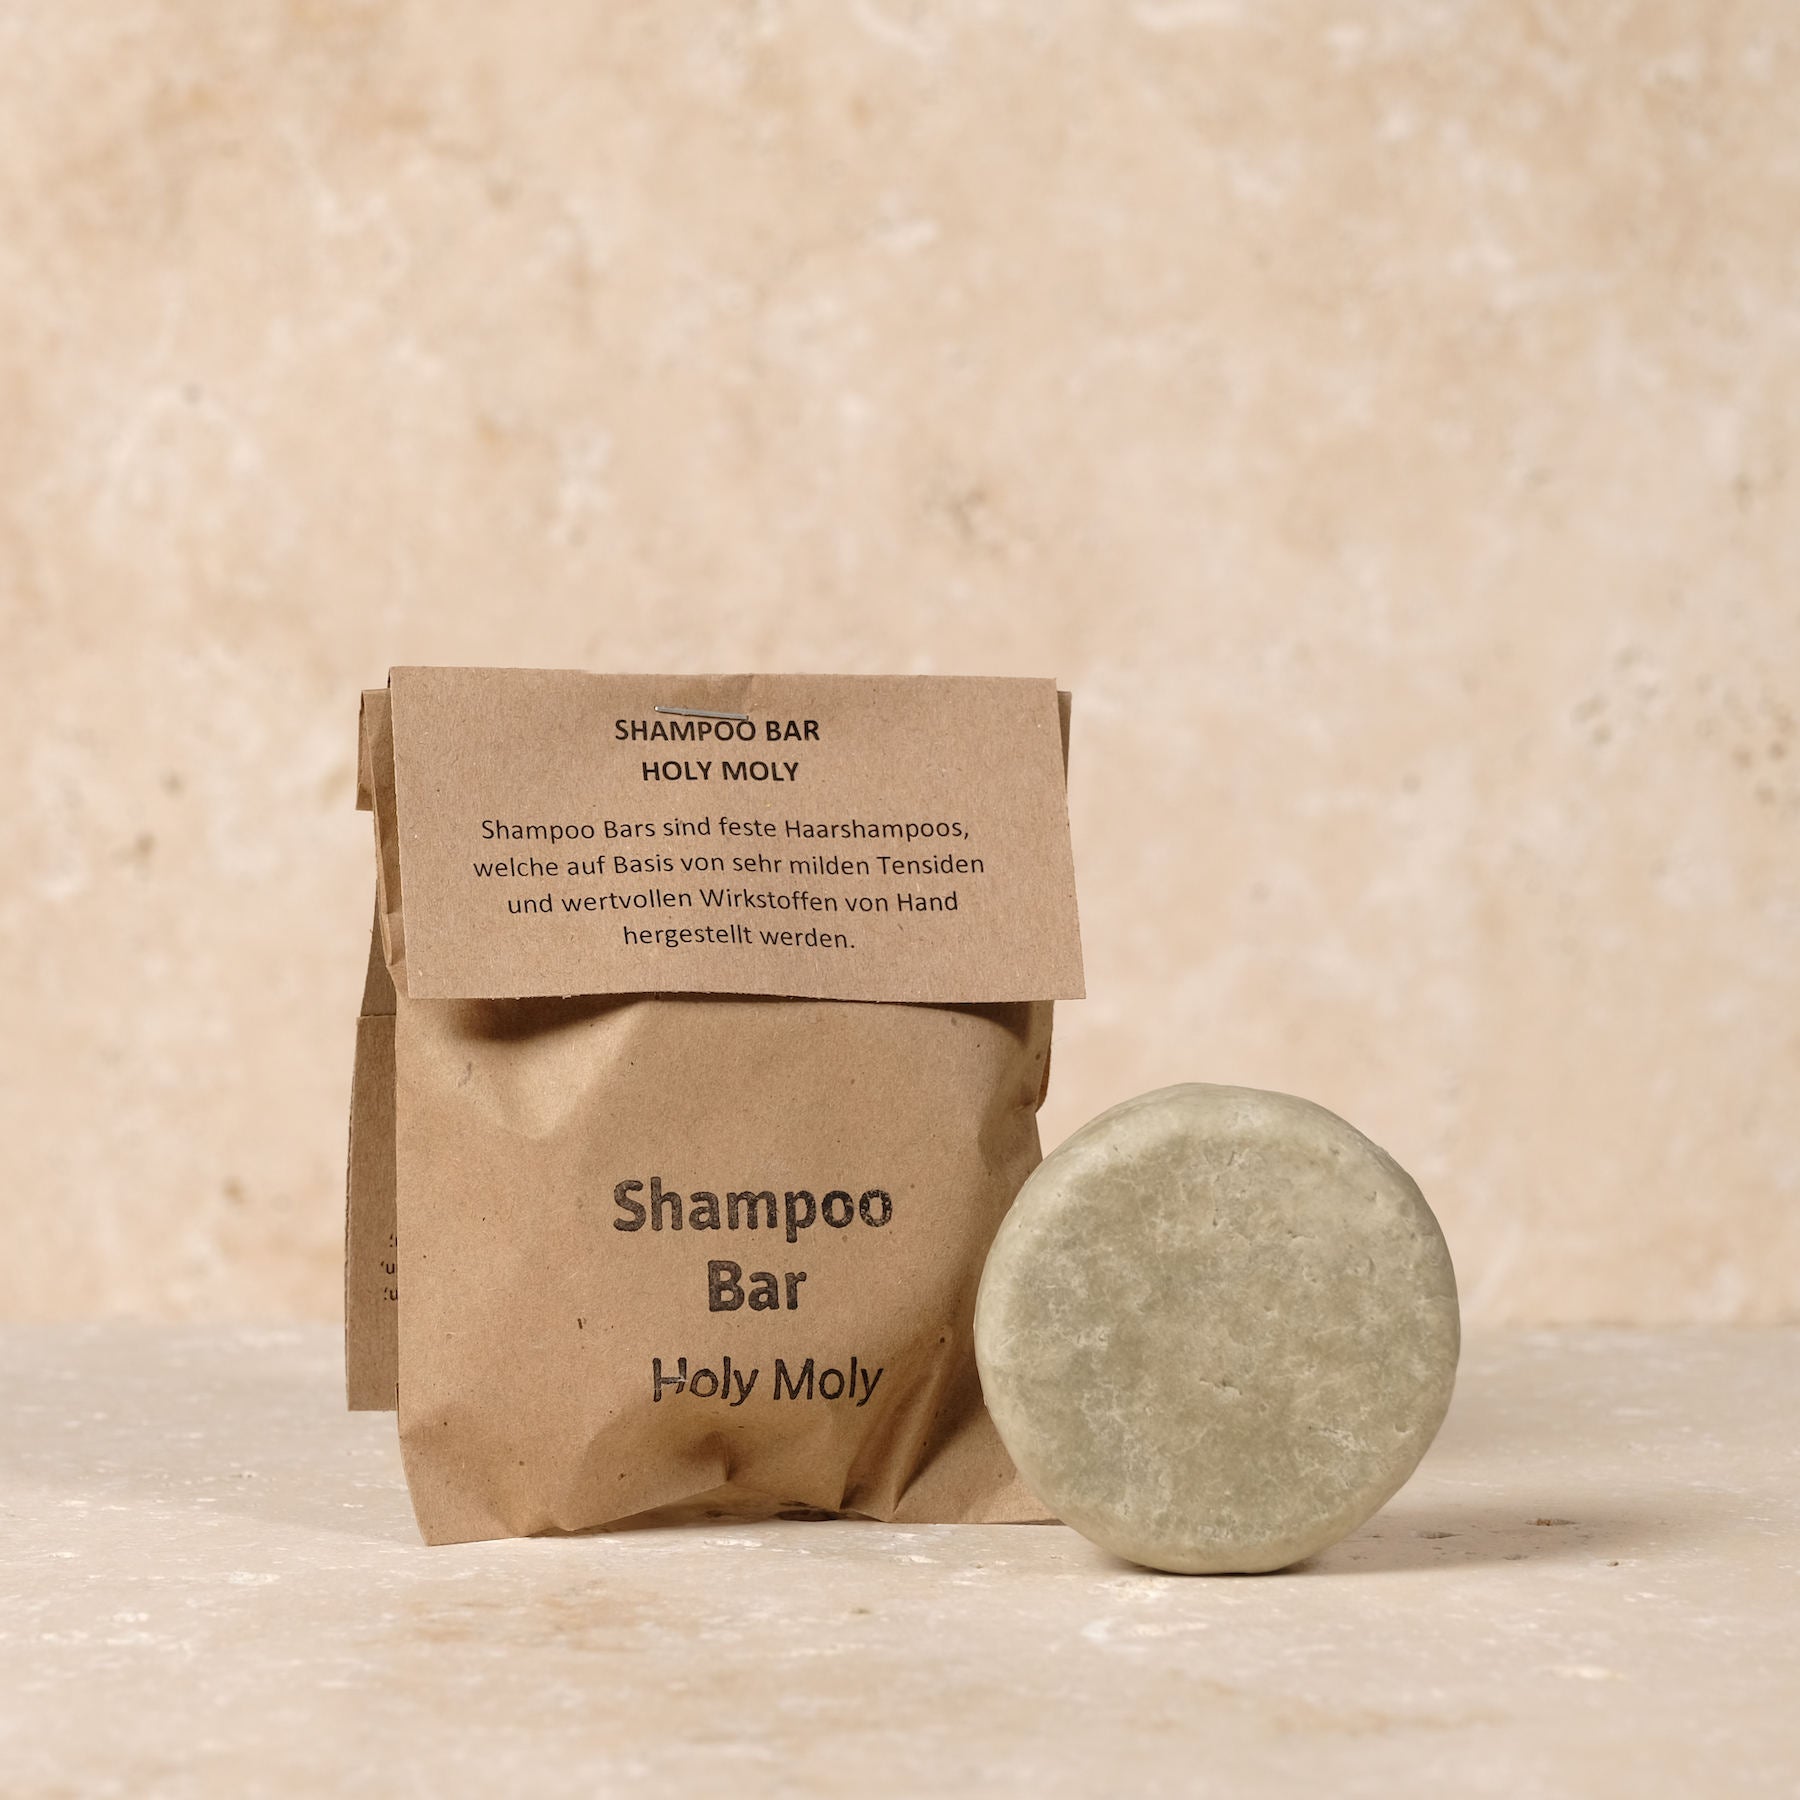 Sapone per capelli sostenibile a rifiuti zero - Barretta shampoo - Holy Moly